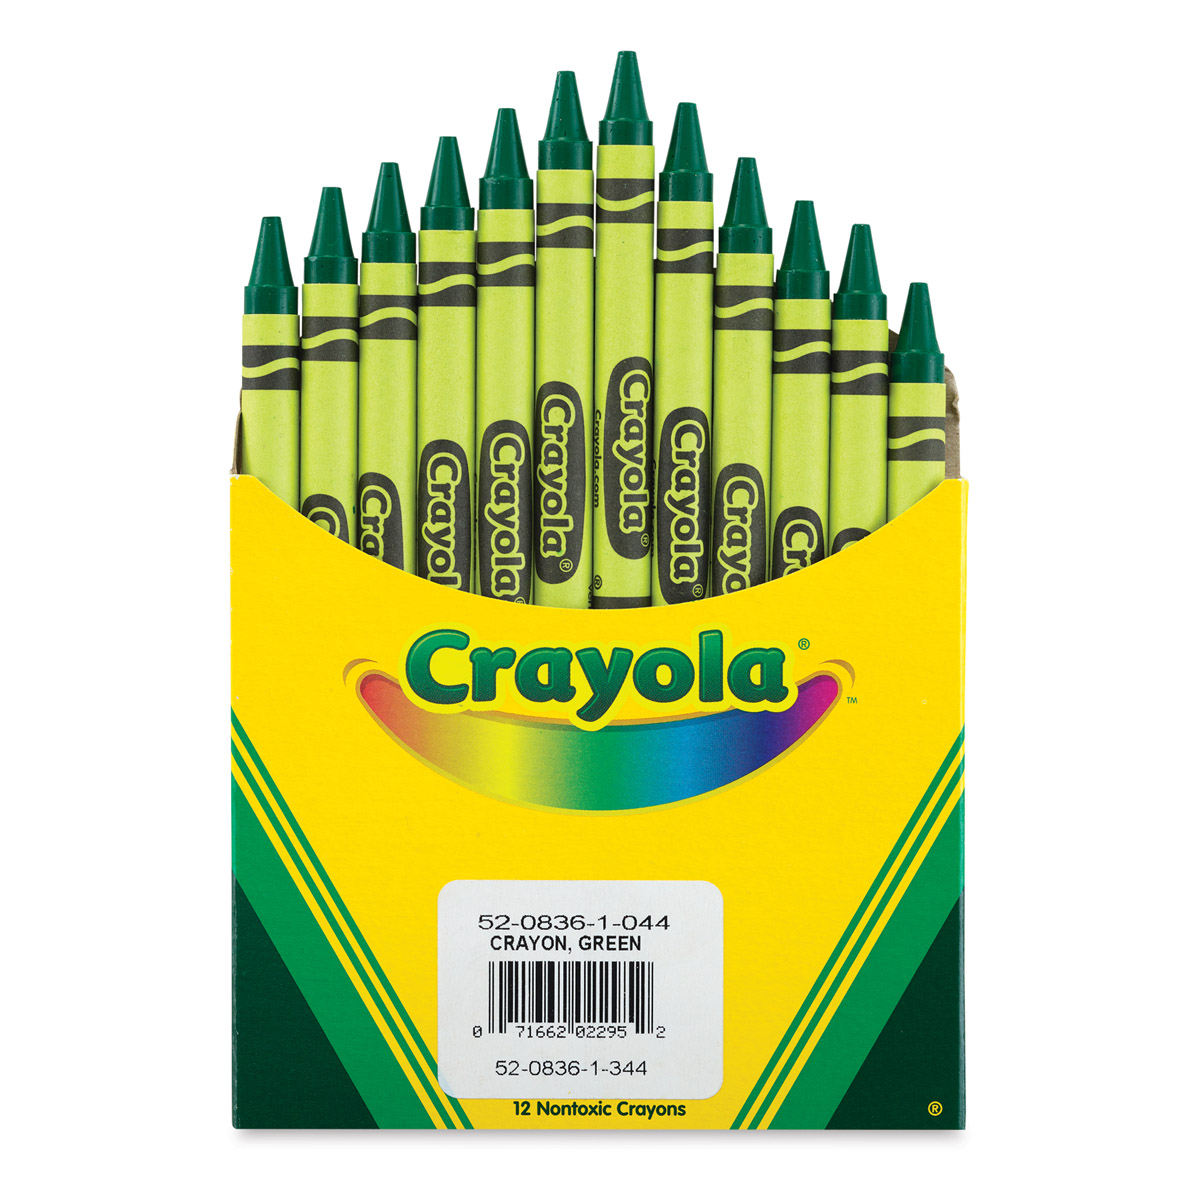 Crayola Crayons - Green, Box of 12